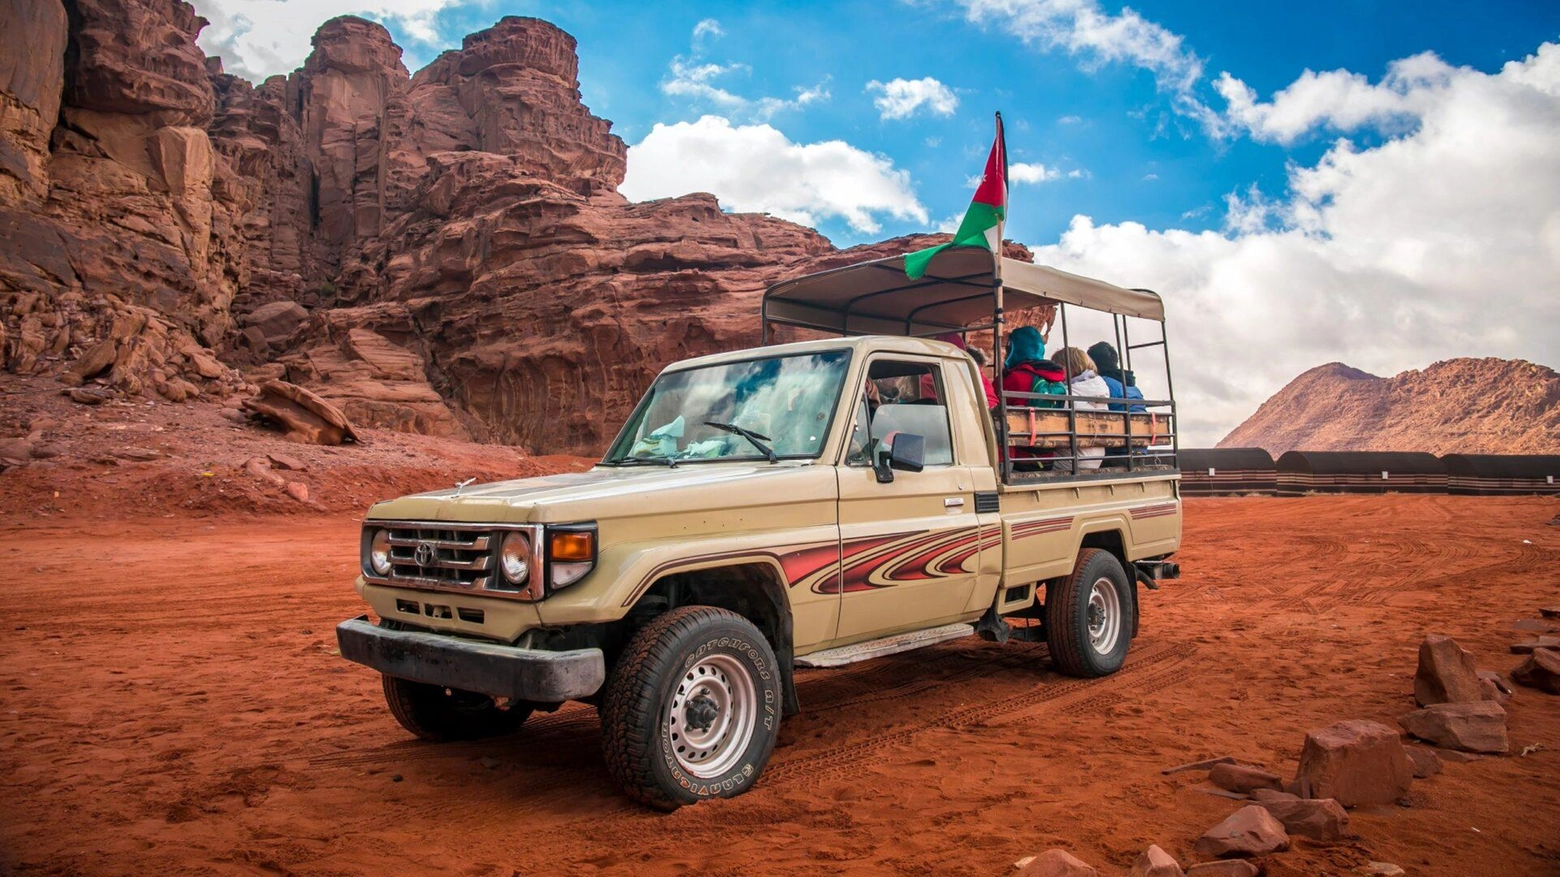 Il deserto ‘rosso’ della Giordania